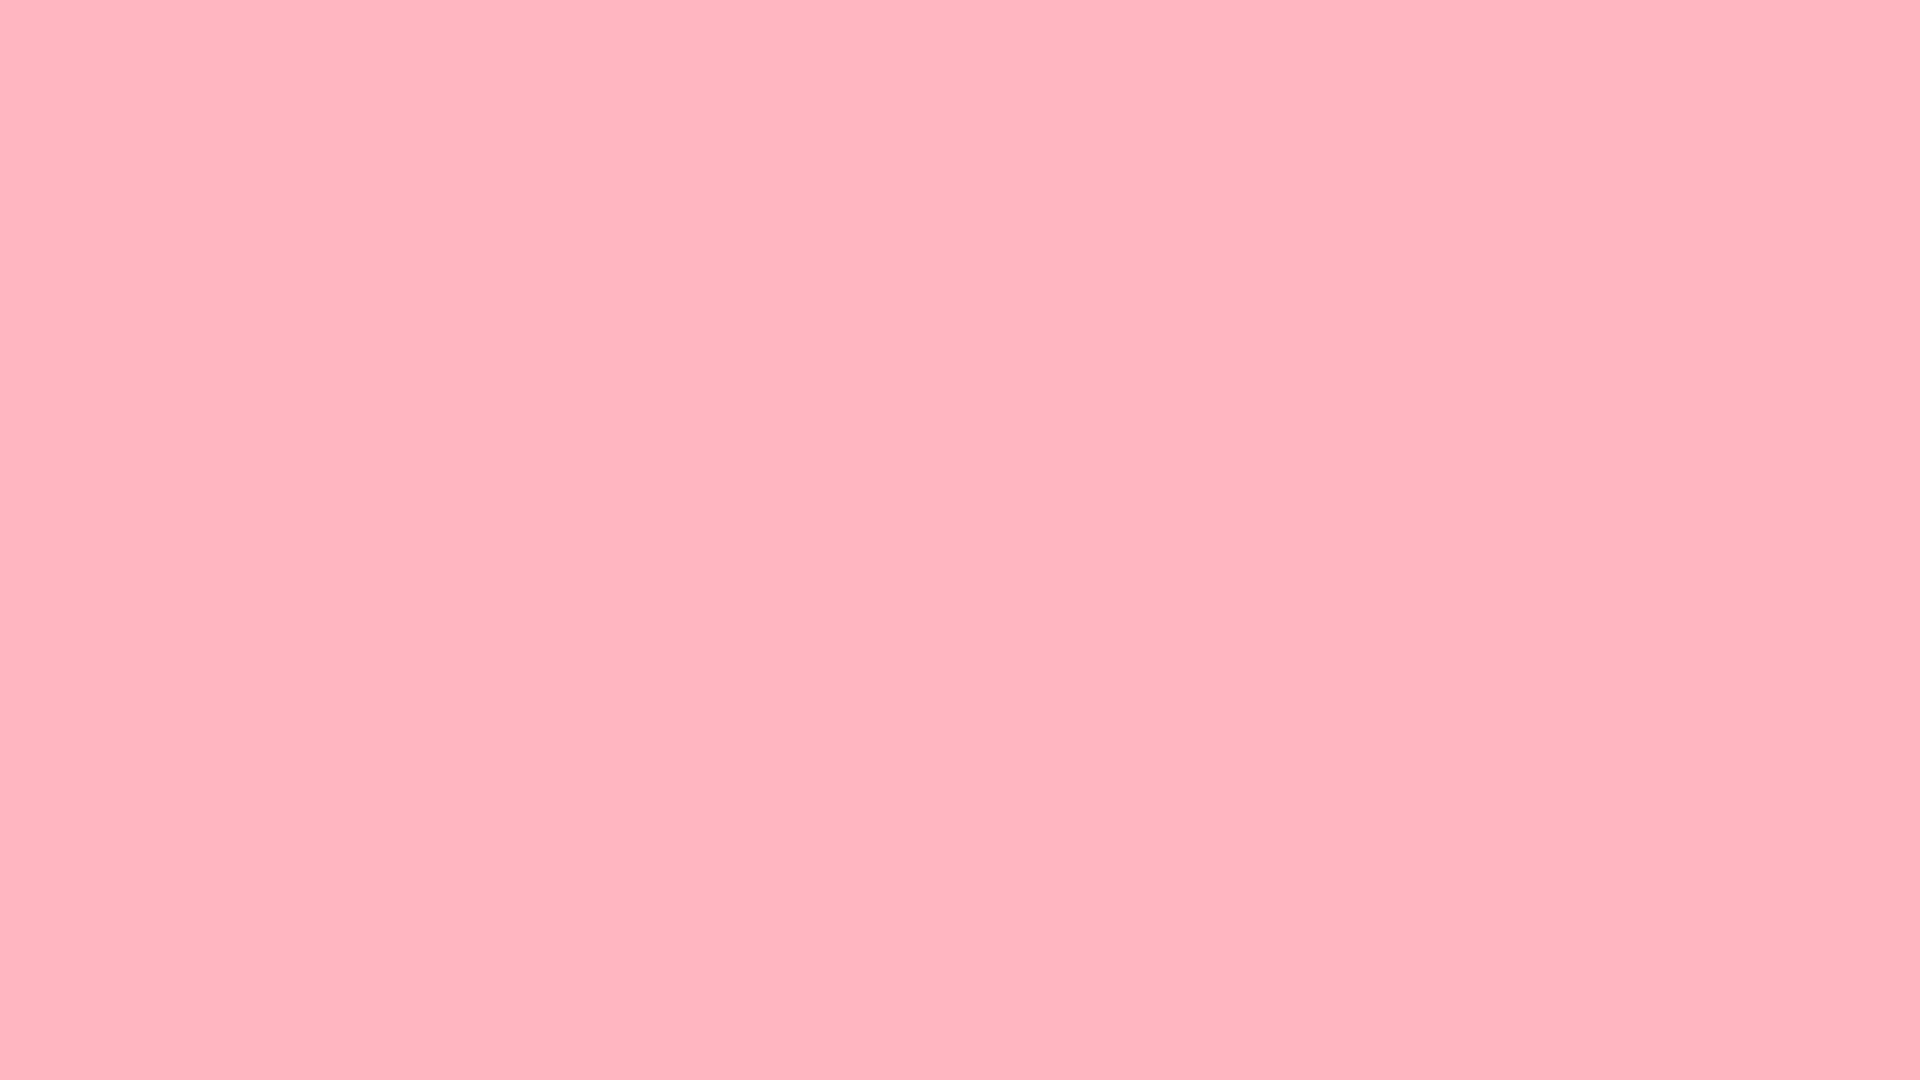 1920x1080 light pink design background images. Light Pink Design Background Images. light  pink wallpapers ...